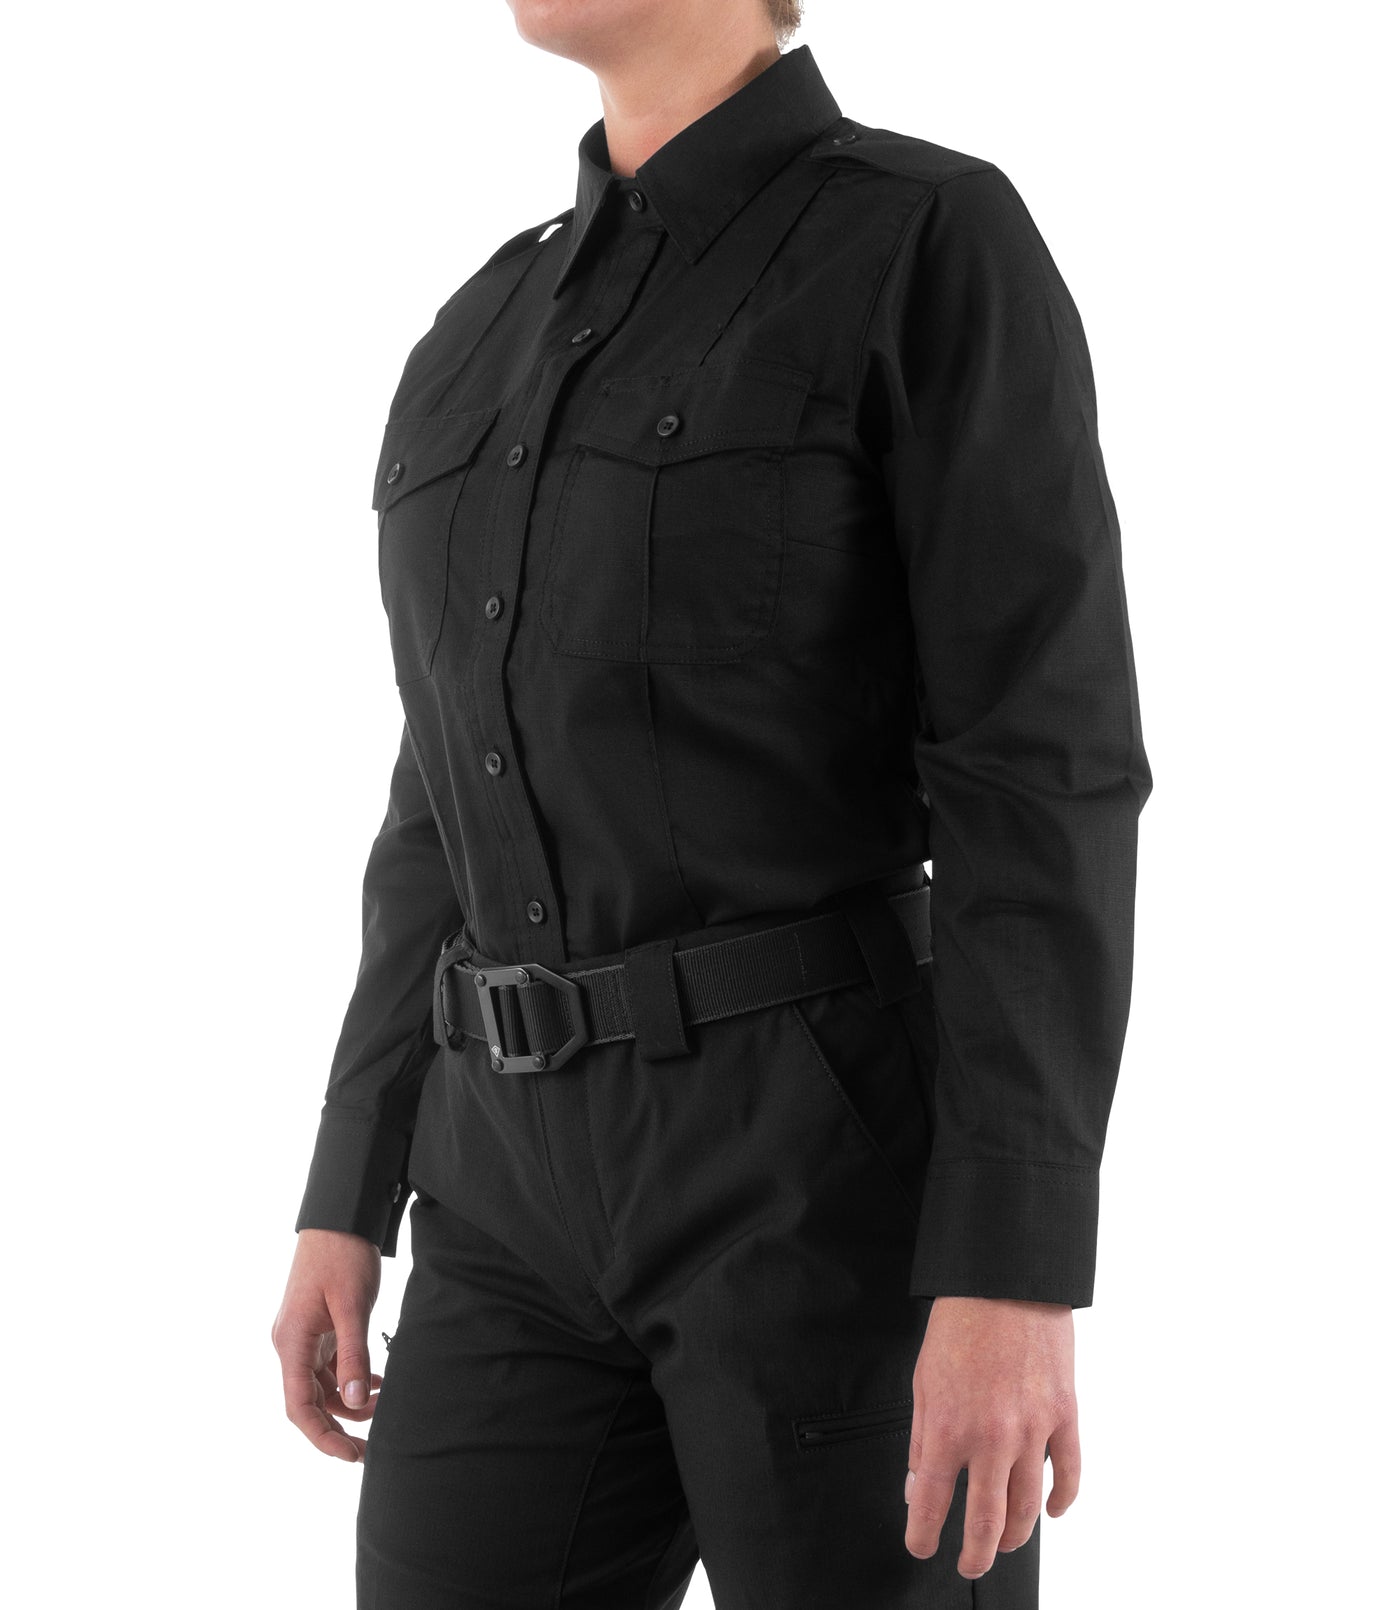 Side of Women's Pro Duty Uniform Shirt in Black